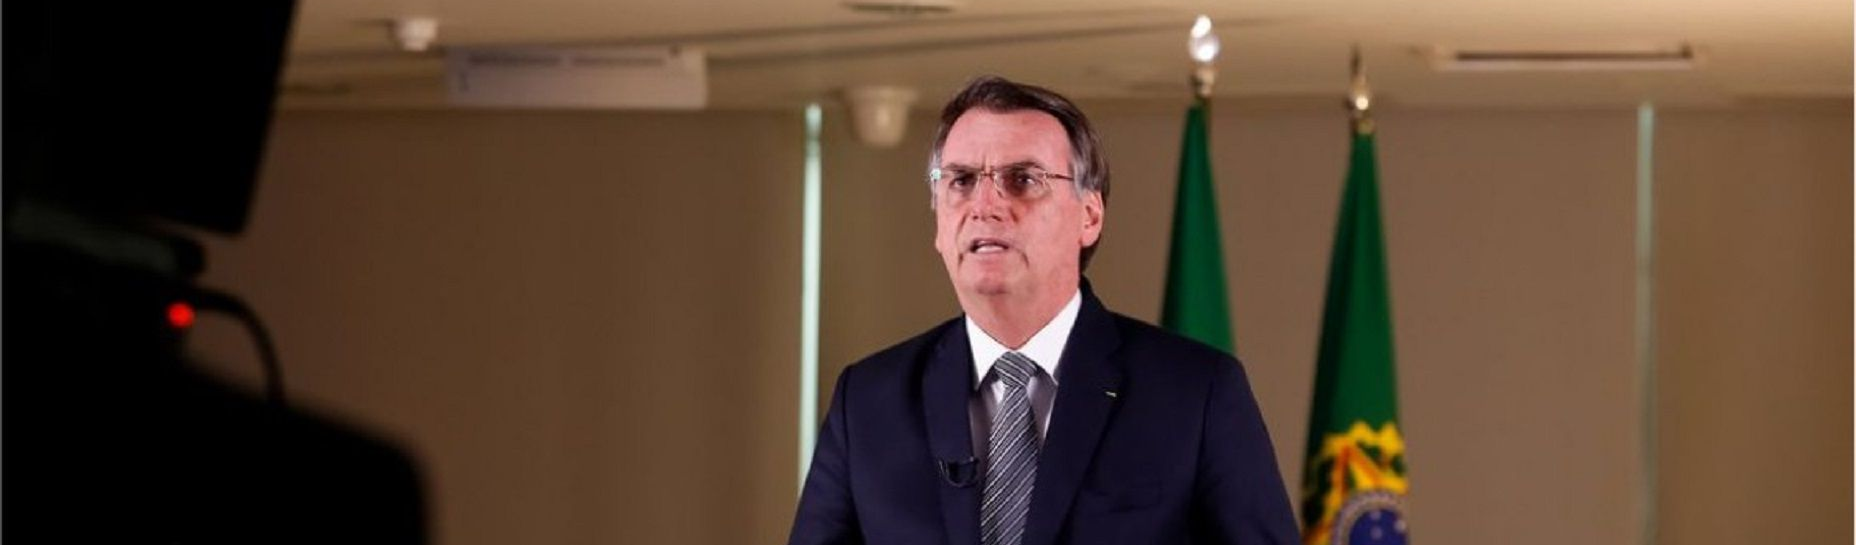 Cria do fascismo de 64, Bolsonaro usa falso nacionalismo enquanto destrói o Brasil